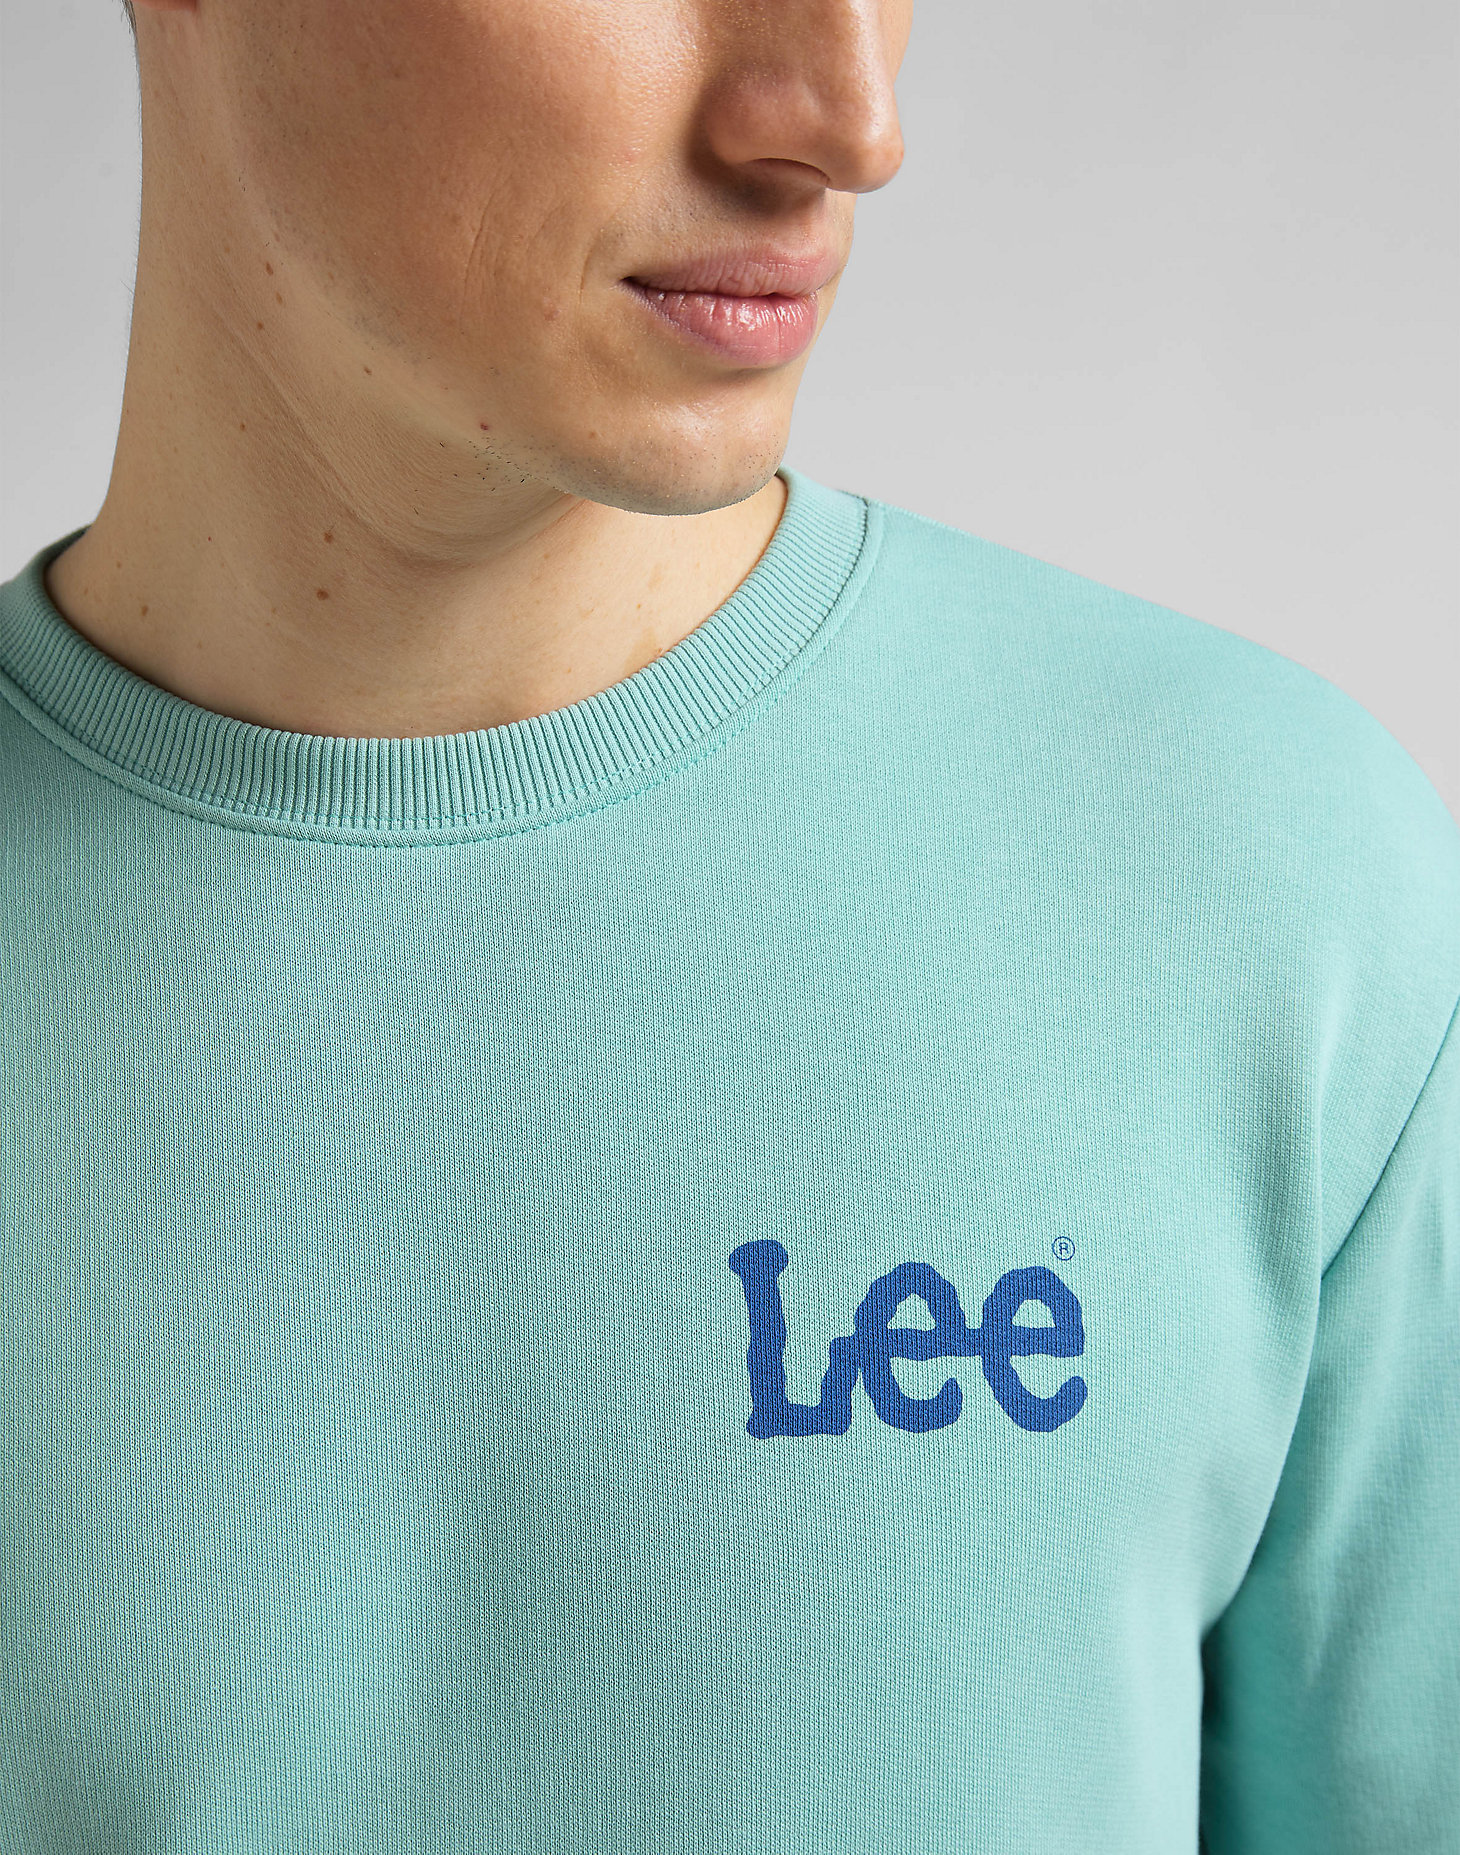 Wobbly Lee Sweatshirt in Mint Blue alternative view 4